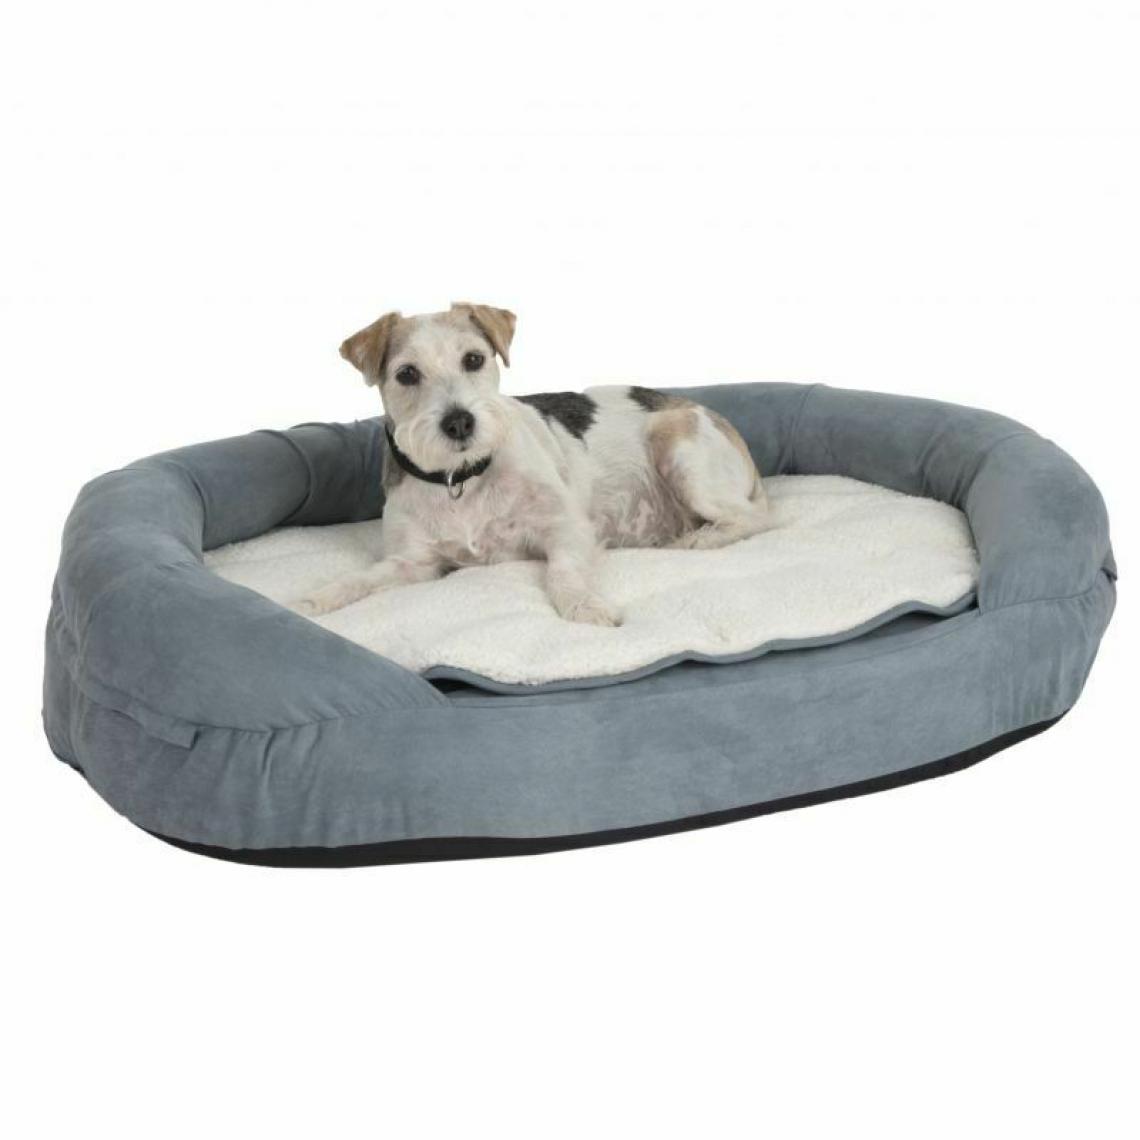 MercatoXL - Corbeille et panier pour chien Lit, oreiller, lit de chien en mousse à mémoire orthopédique pour chien 72x50x20cm - Corbeille pour chien